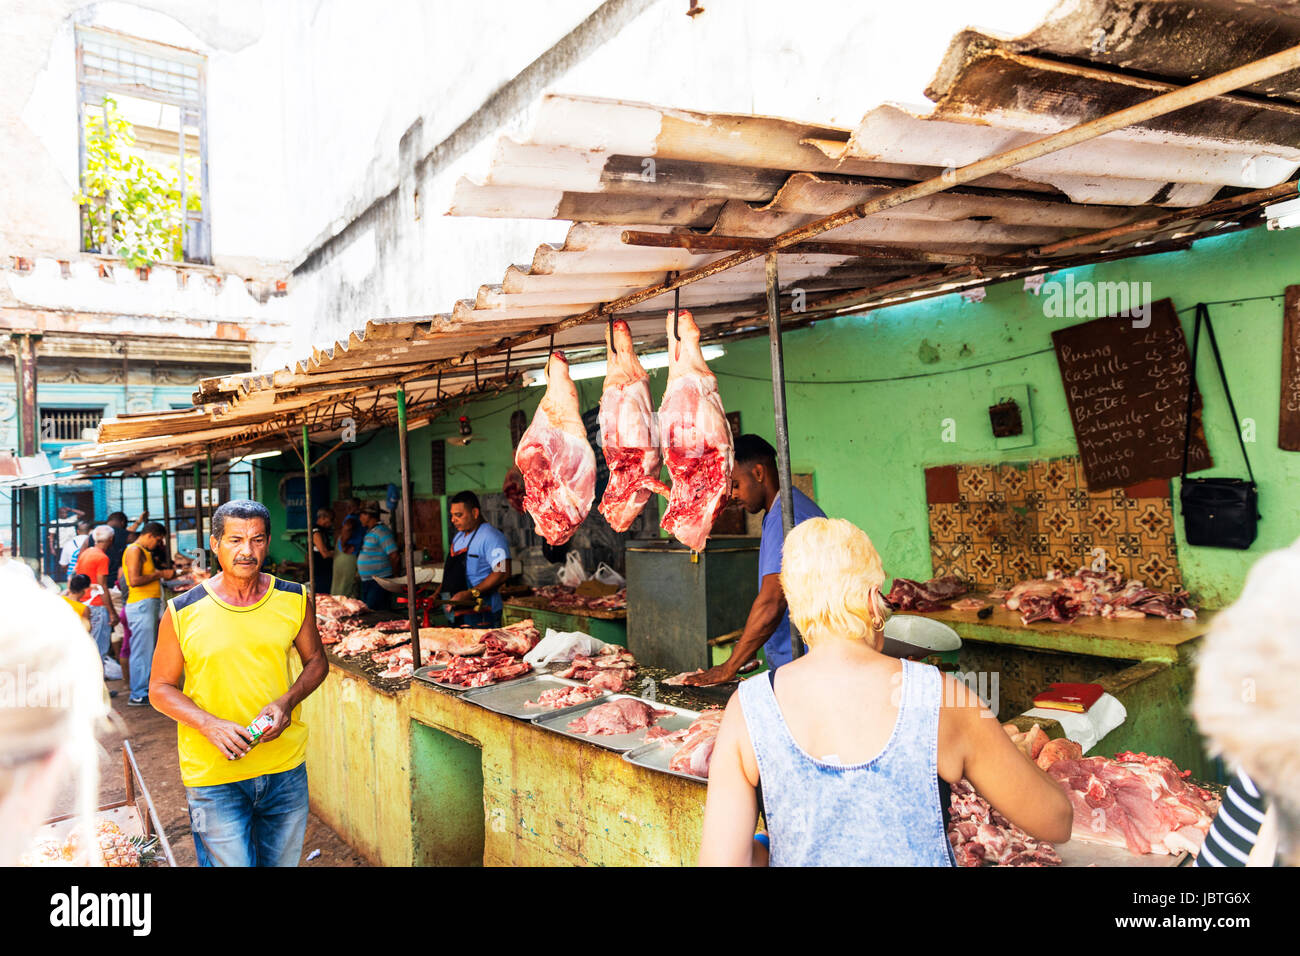 Havanna-Fleisch-Markt, Markt Kuba, kubanische Fleischmarkt, Keulen, Schweinefleischprodukte zu verkaufen, Kuba Fleischmarkt, Marktstände, Verkauf von Fleisch, Stockfoto